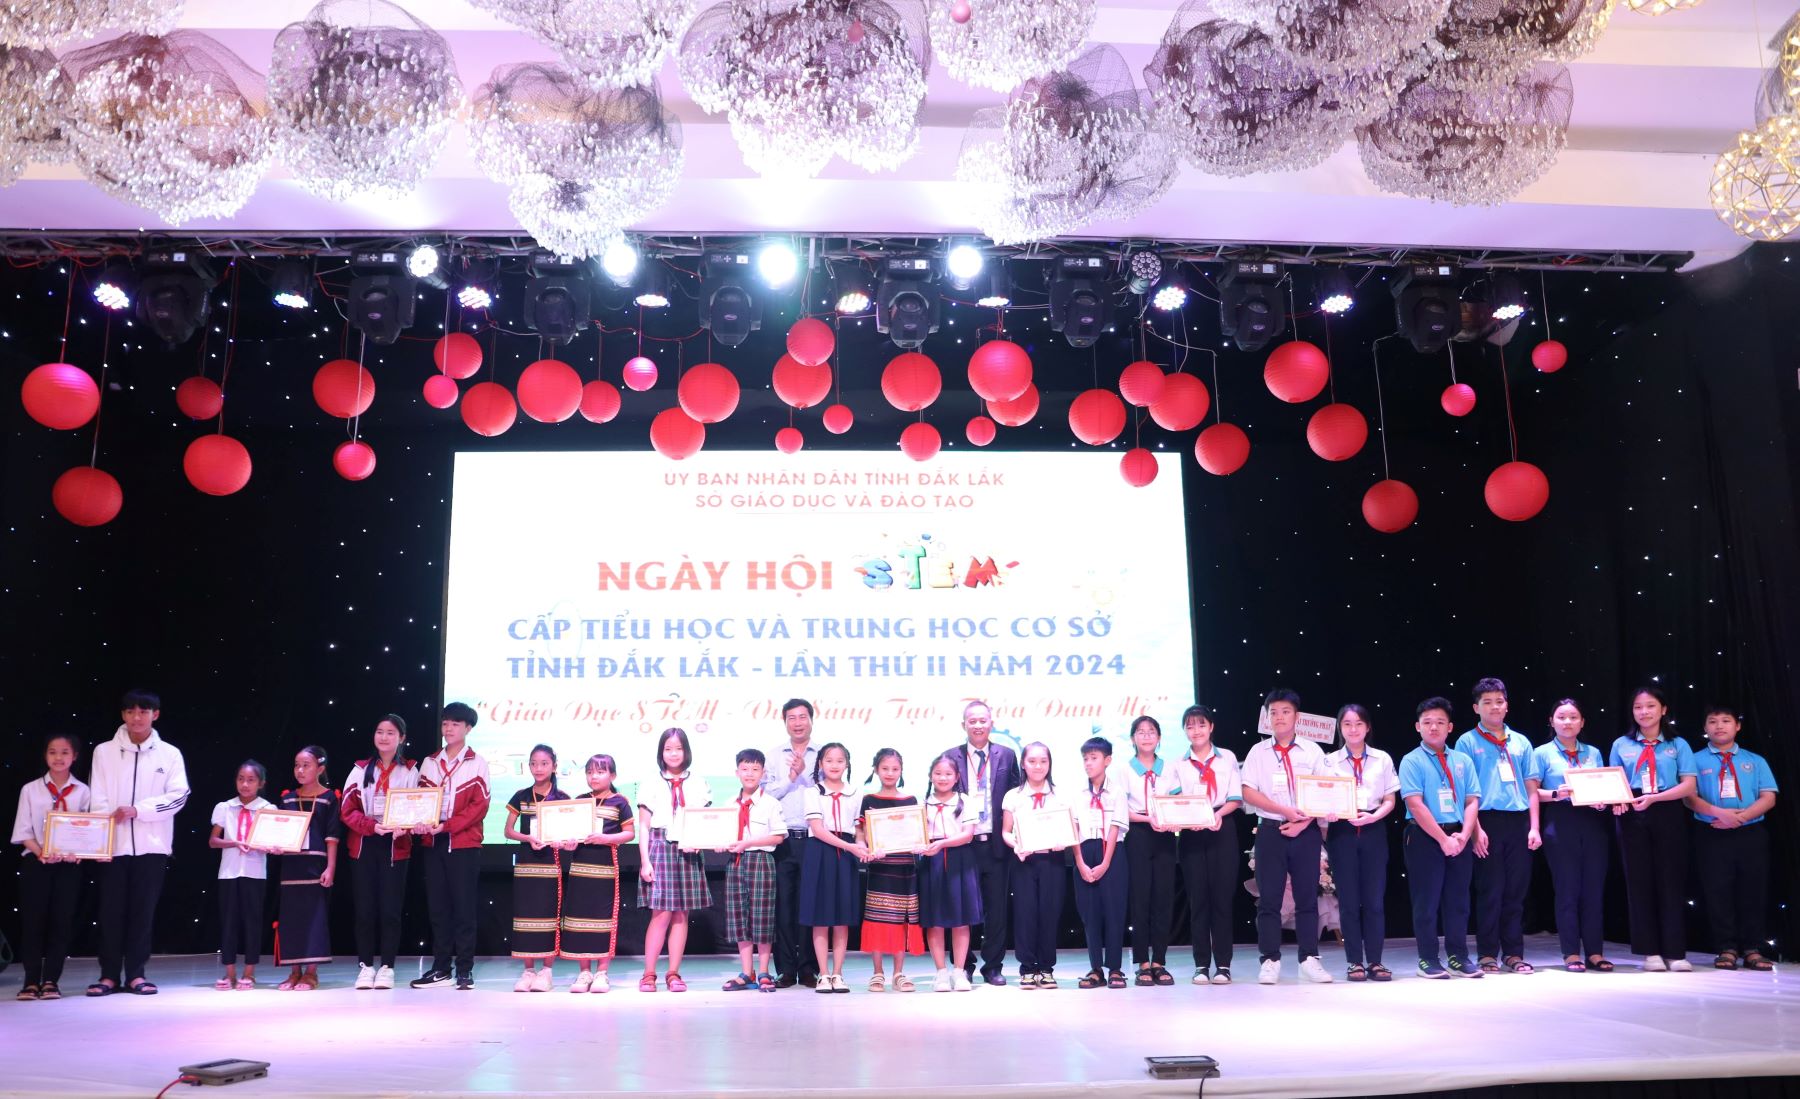 Trao giải Ngày hội STEM cấp tiểu học và THCS tỉnh Đắk Lắk lần thứ II - năm 2024